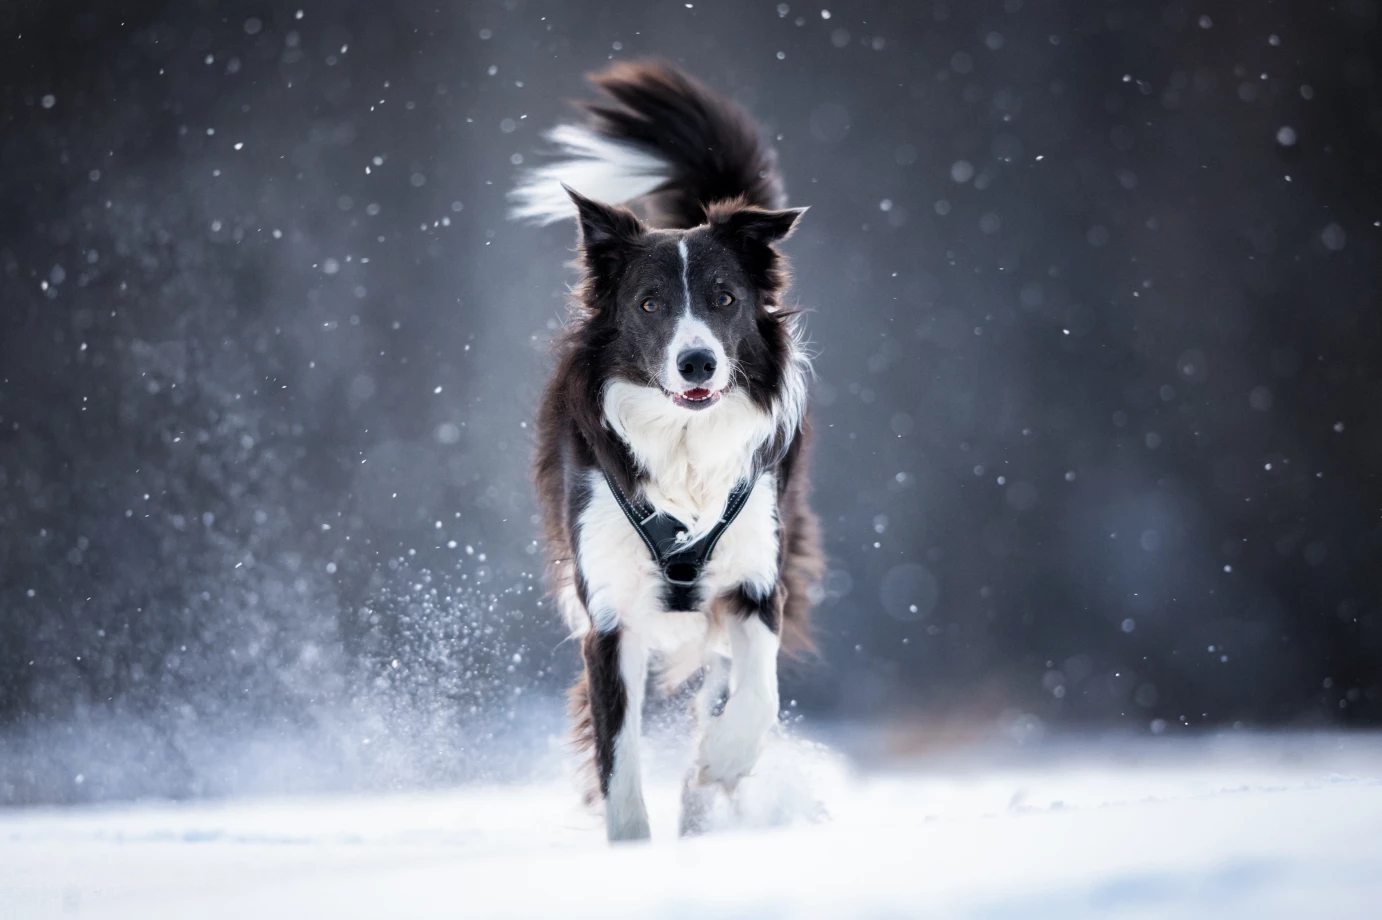 zdjęcia krakow fotograf filip-stefaniak portfolio zimowe sesje zdjeciowe zima snieg